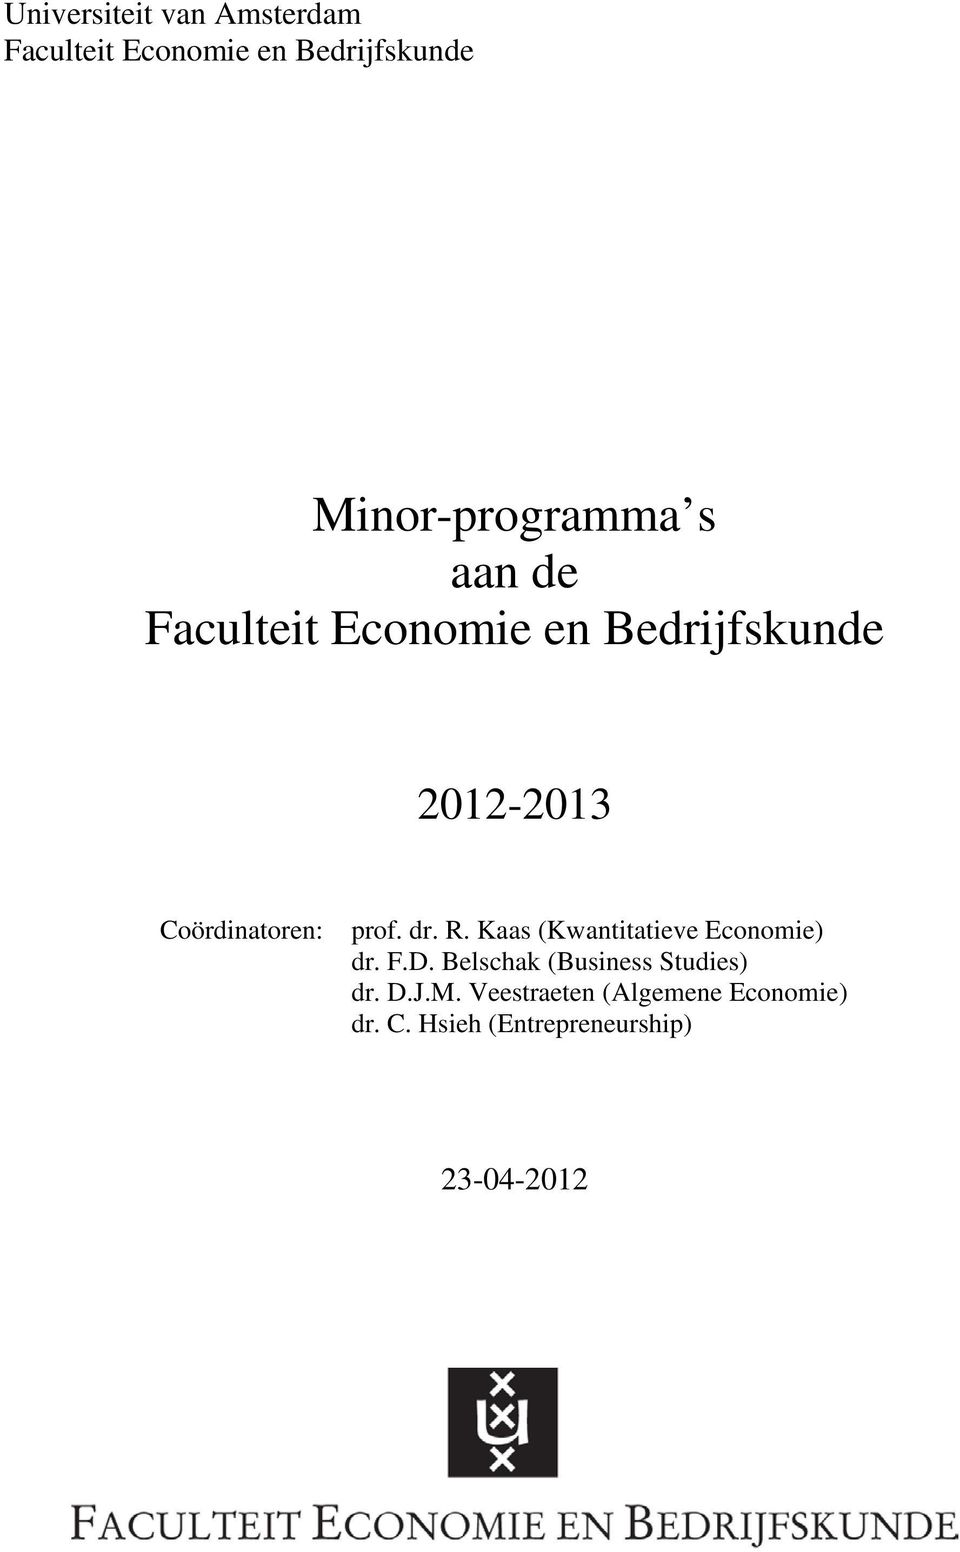 R. Kaas (Kwantitatieve Economie) dr. F.D. Belschak (Business Studies) dr. D.J.